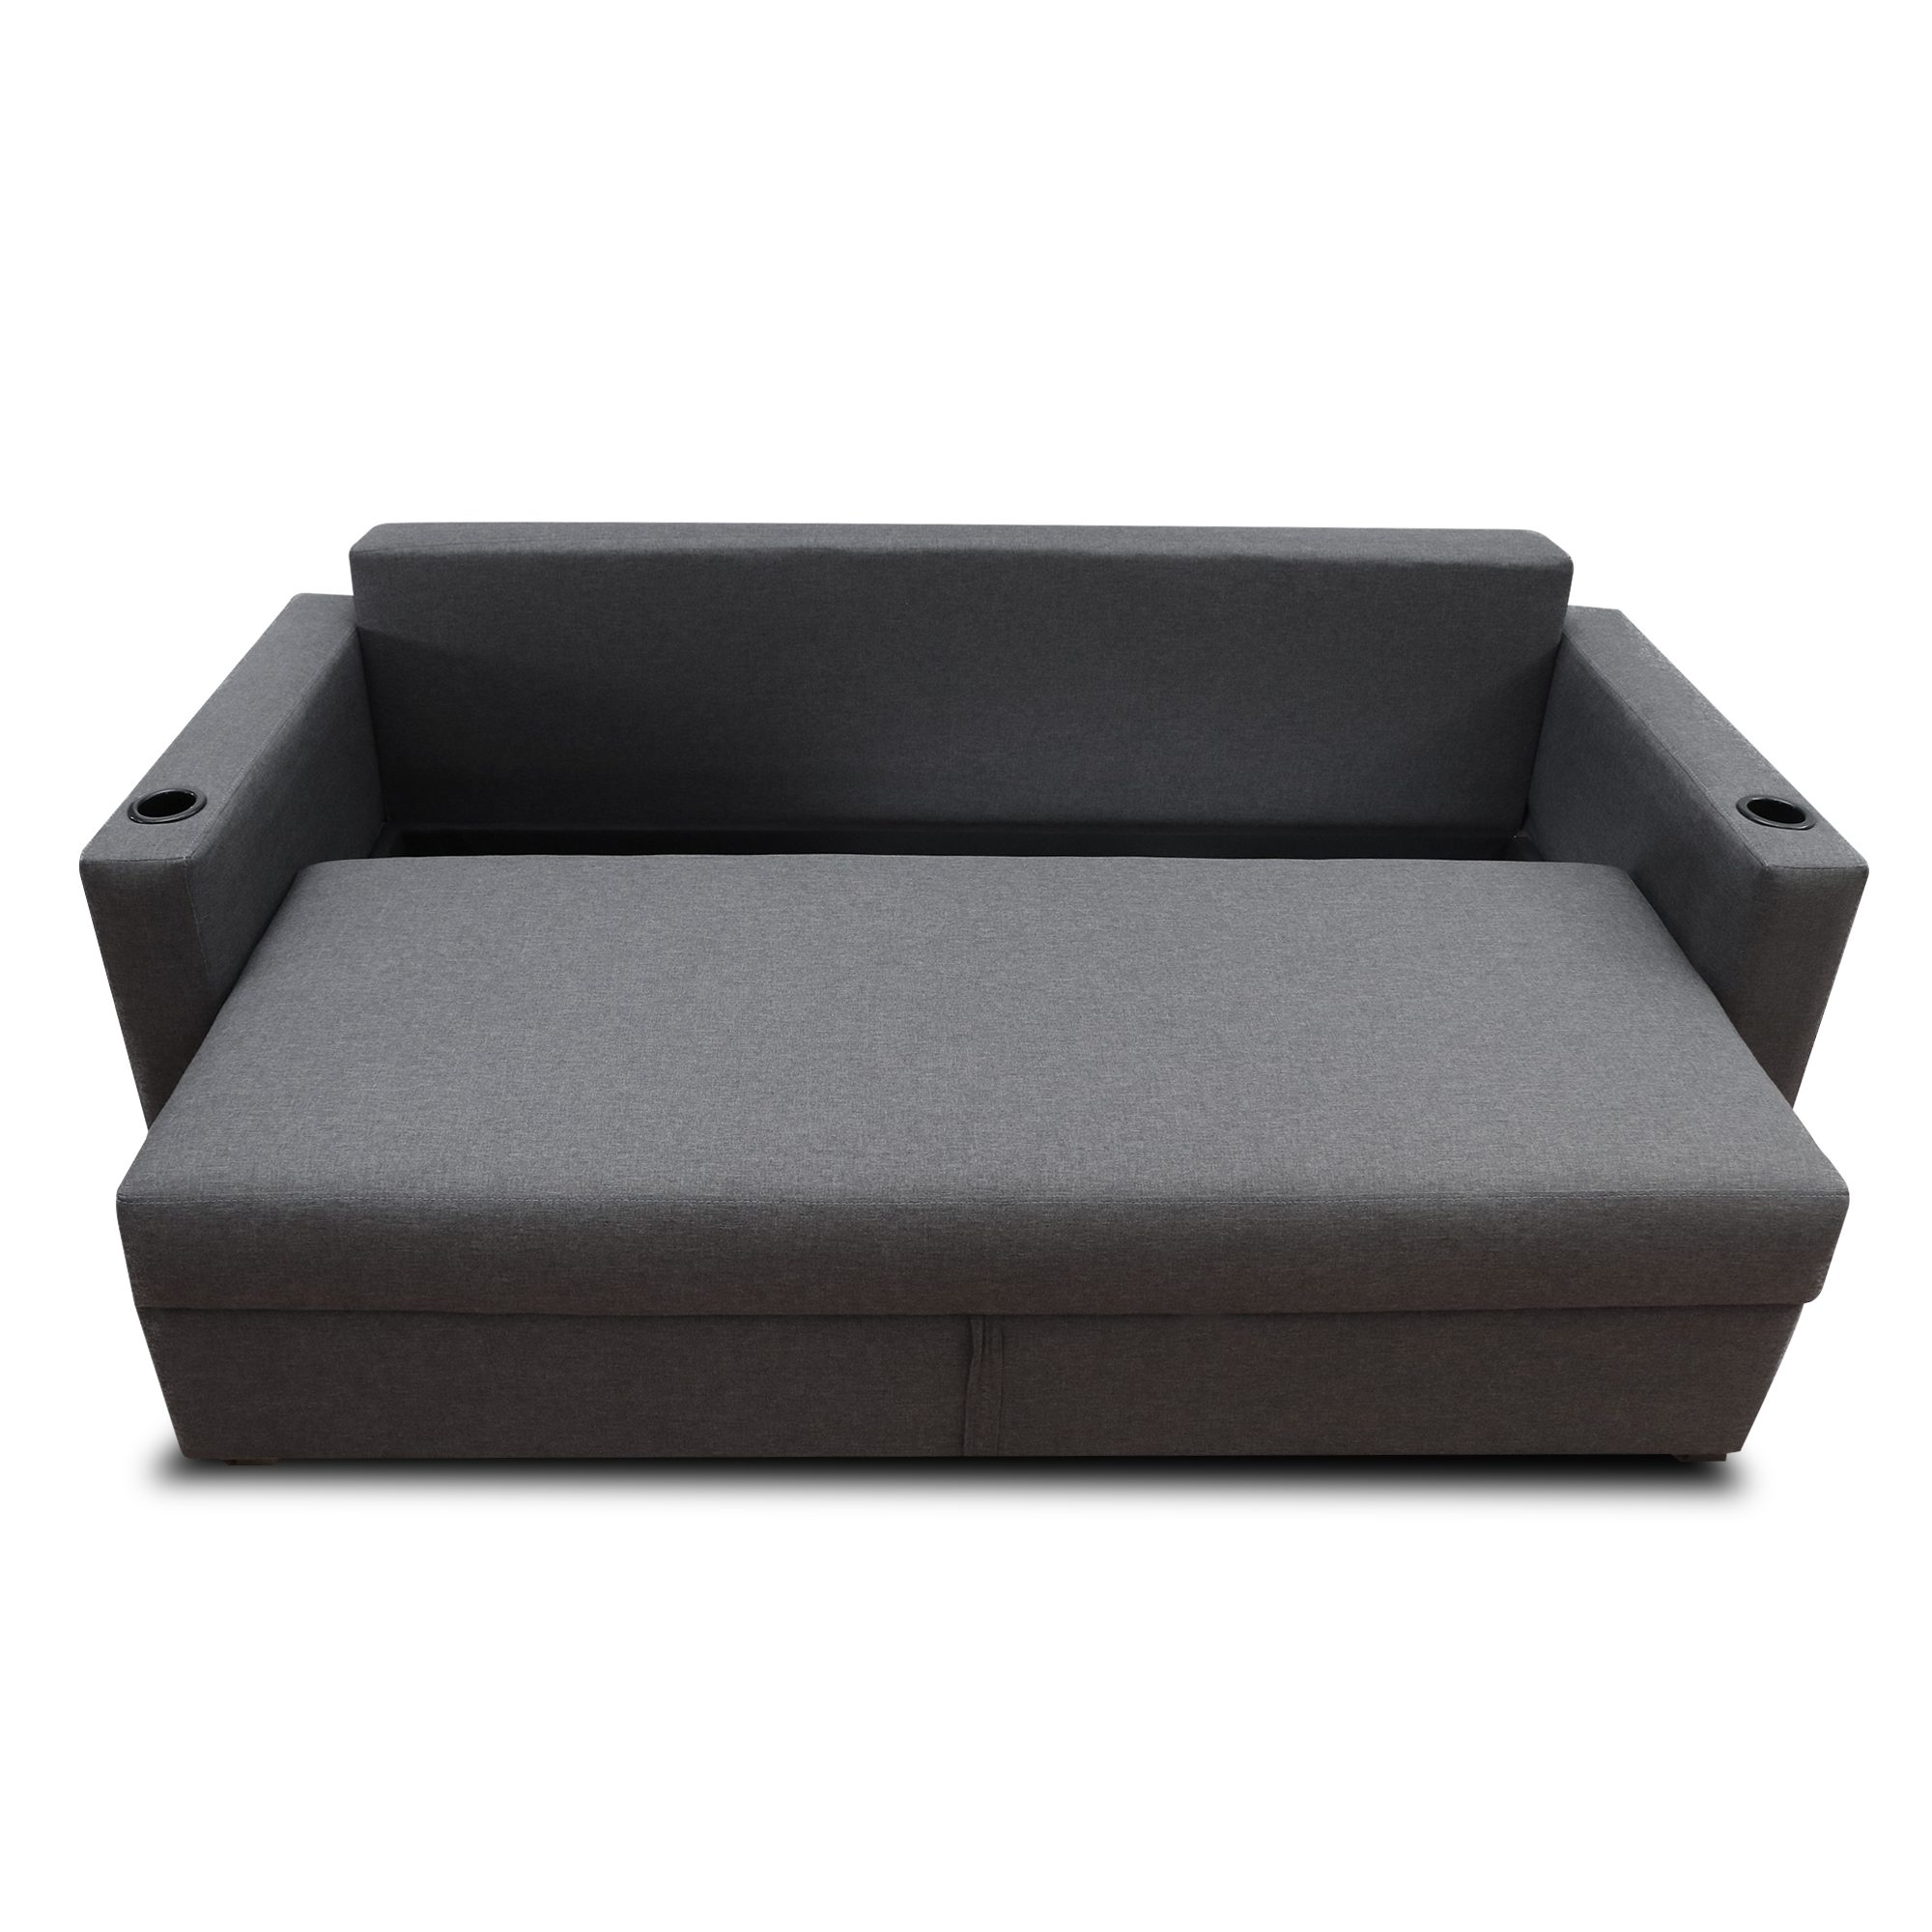 Sofá cama Litto individual - Mobydec Muebles  Venta de muebles en línea  salas, sillones, mesas